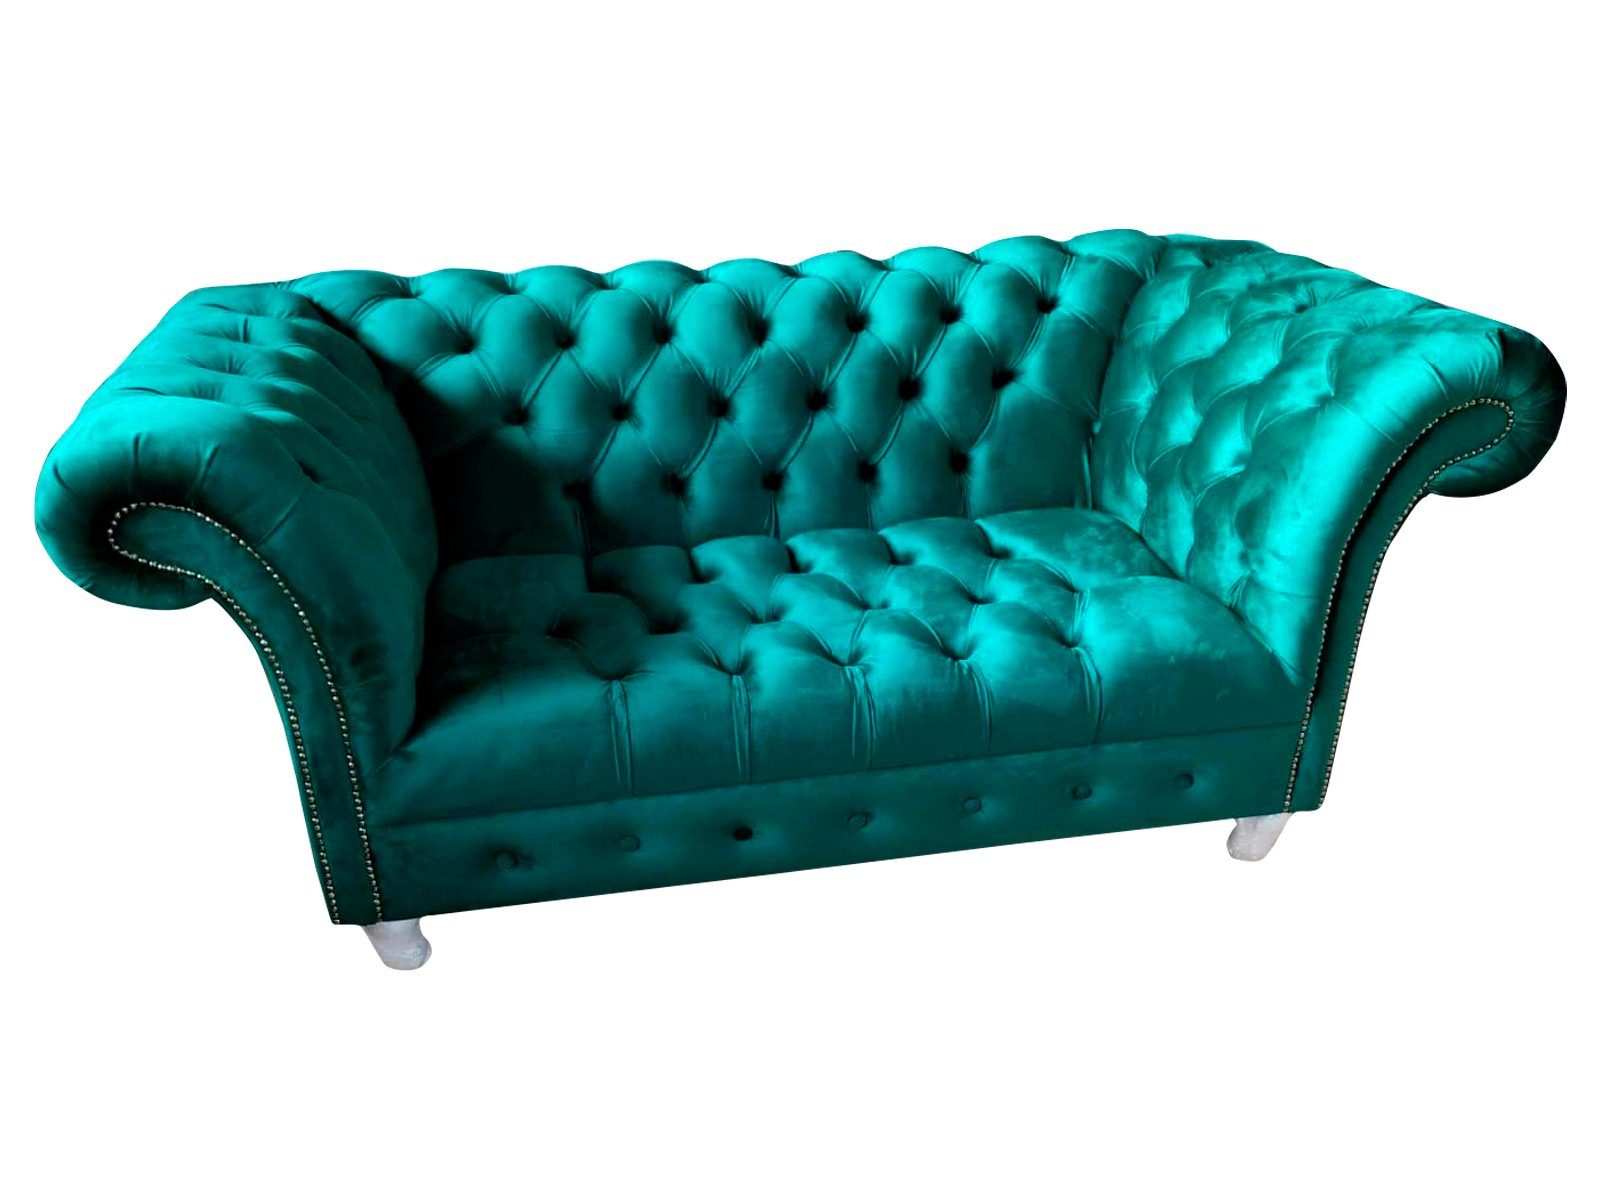 JVmoebel Sofa, Chesterfield Luxus Sofa 2 Sitzer Textil Couch Blau Sofas Grüne Couchen